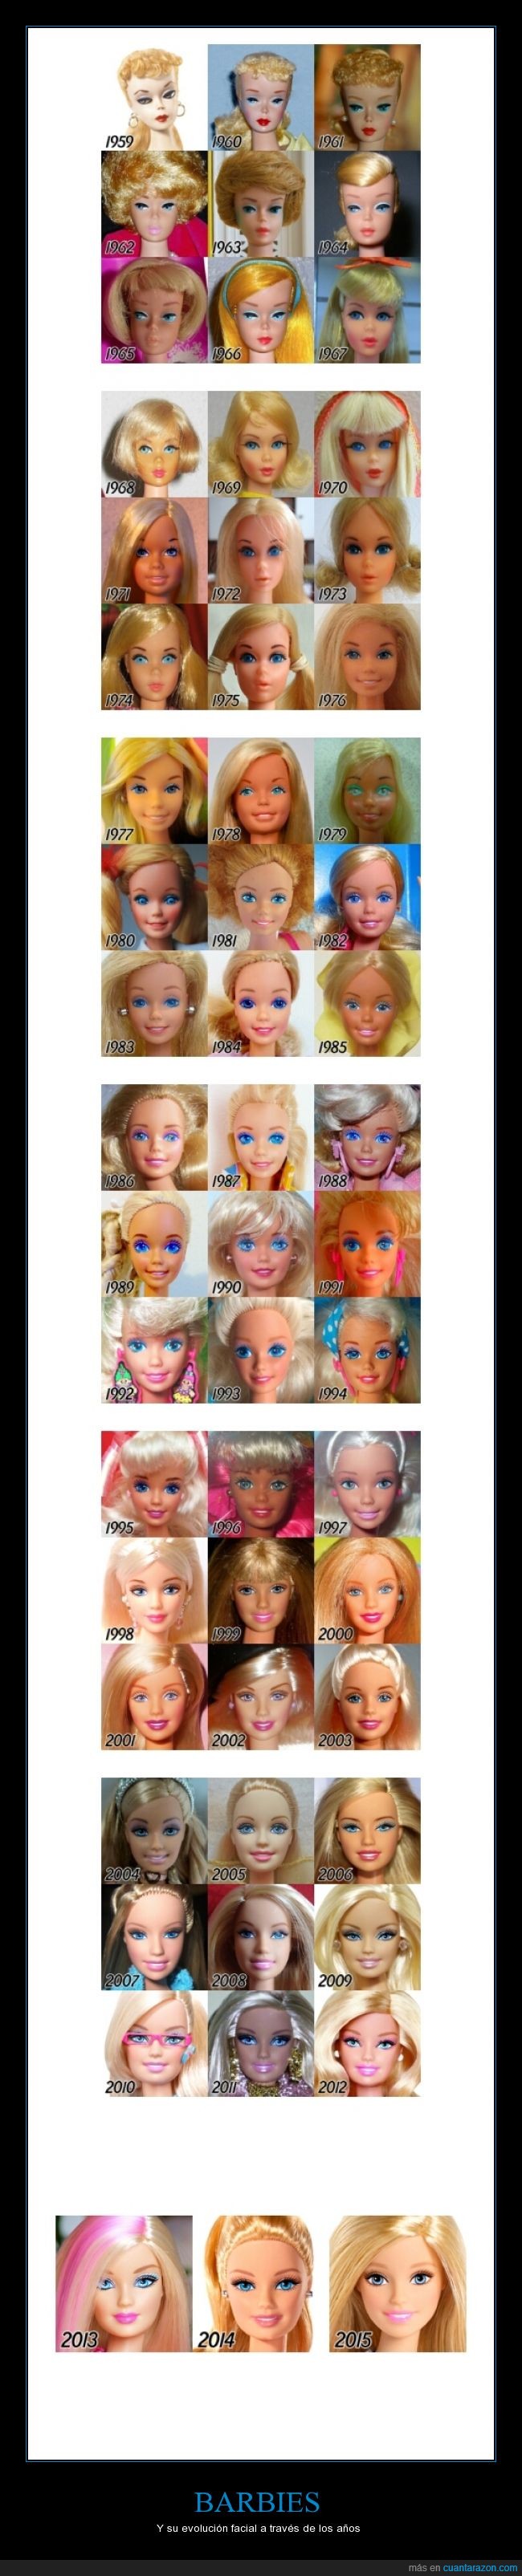 Barbies,muñecas,rostros,evolucionado,cambios